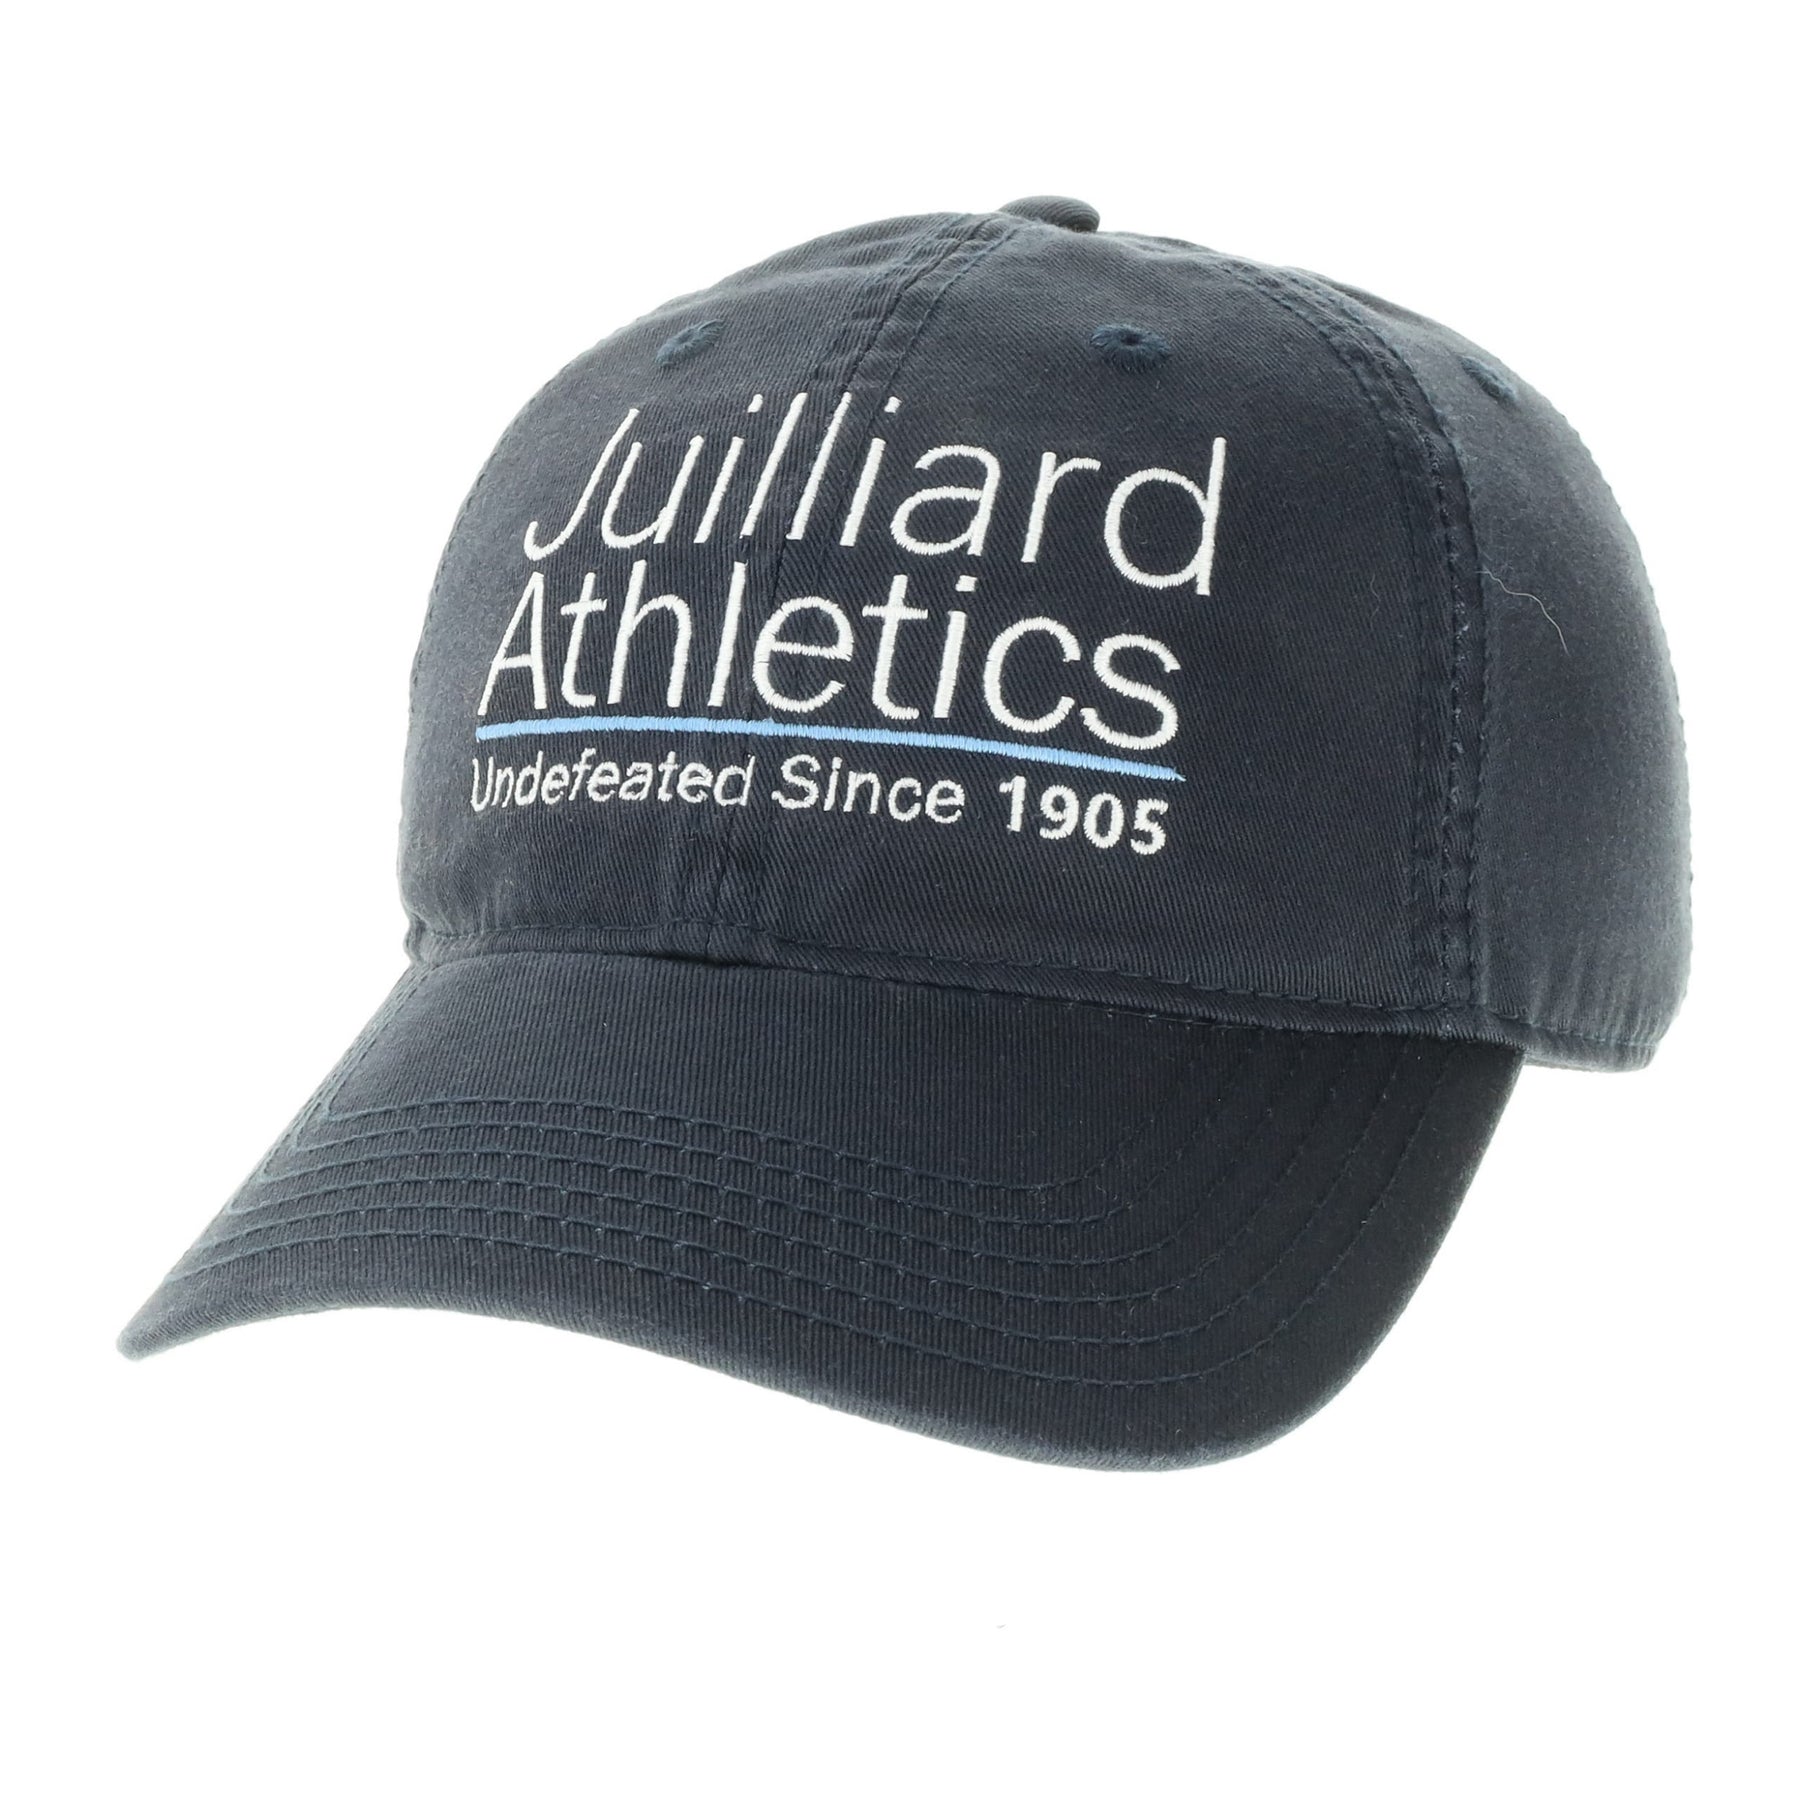 Cap: Juilliard Athletics Undefeated Since 1905